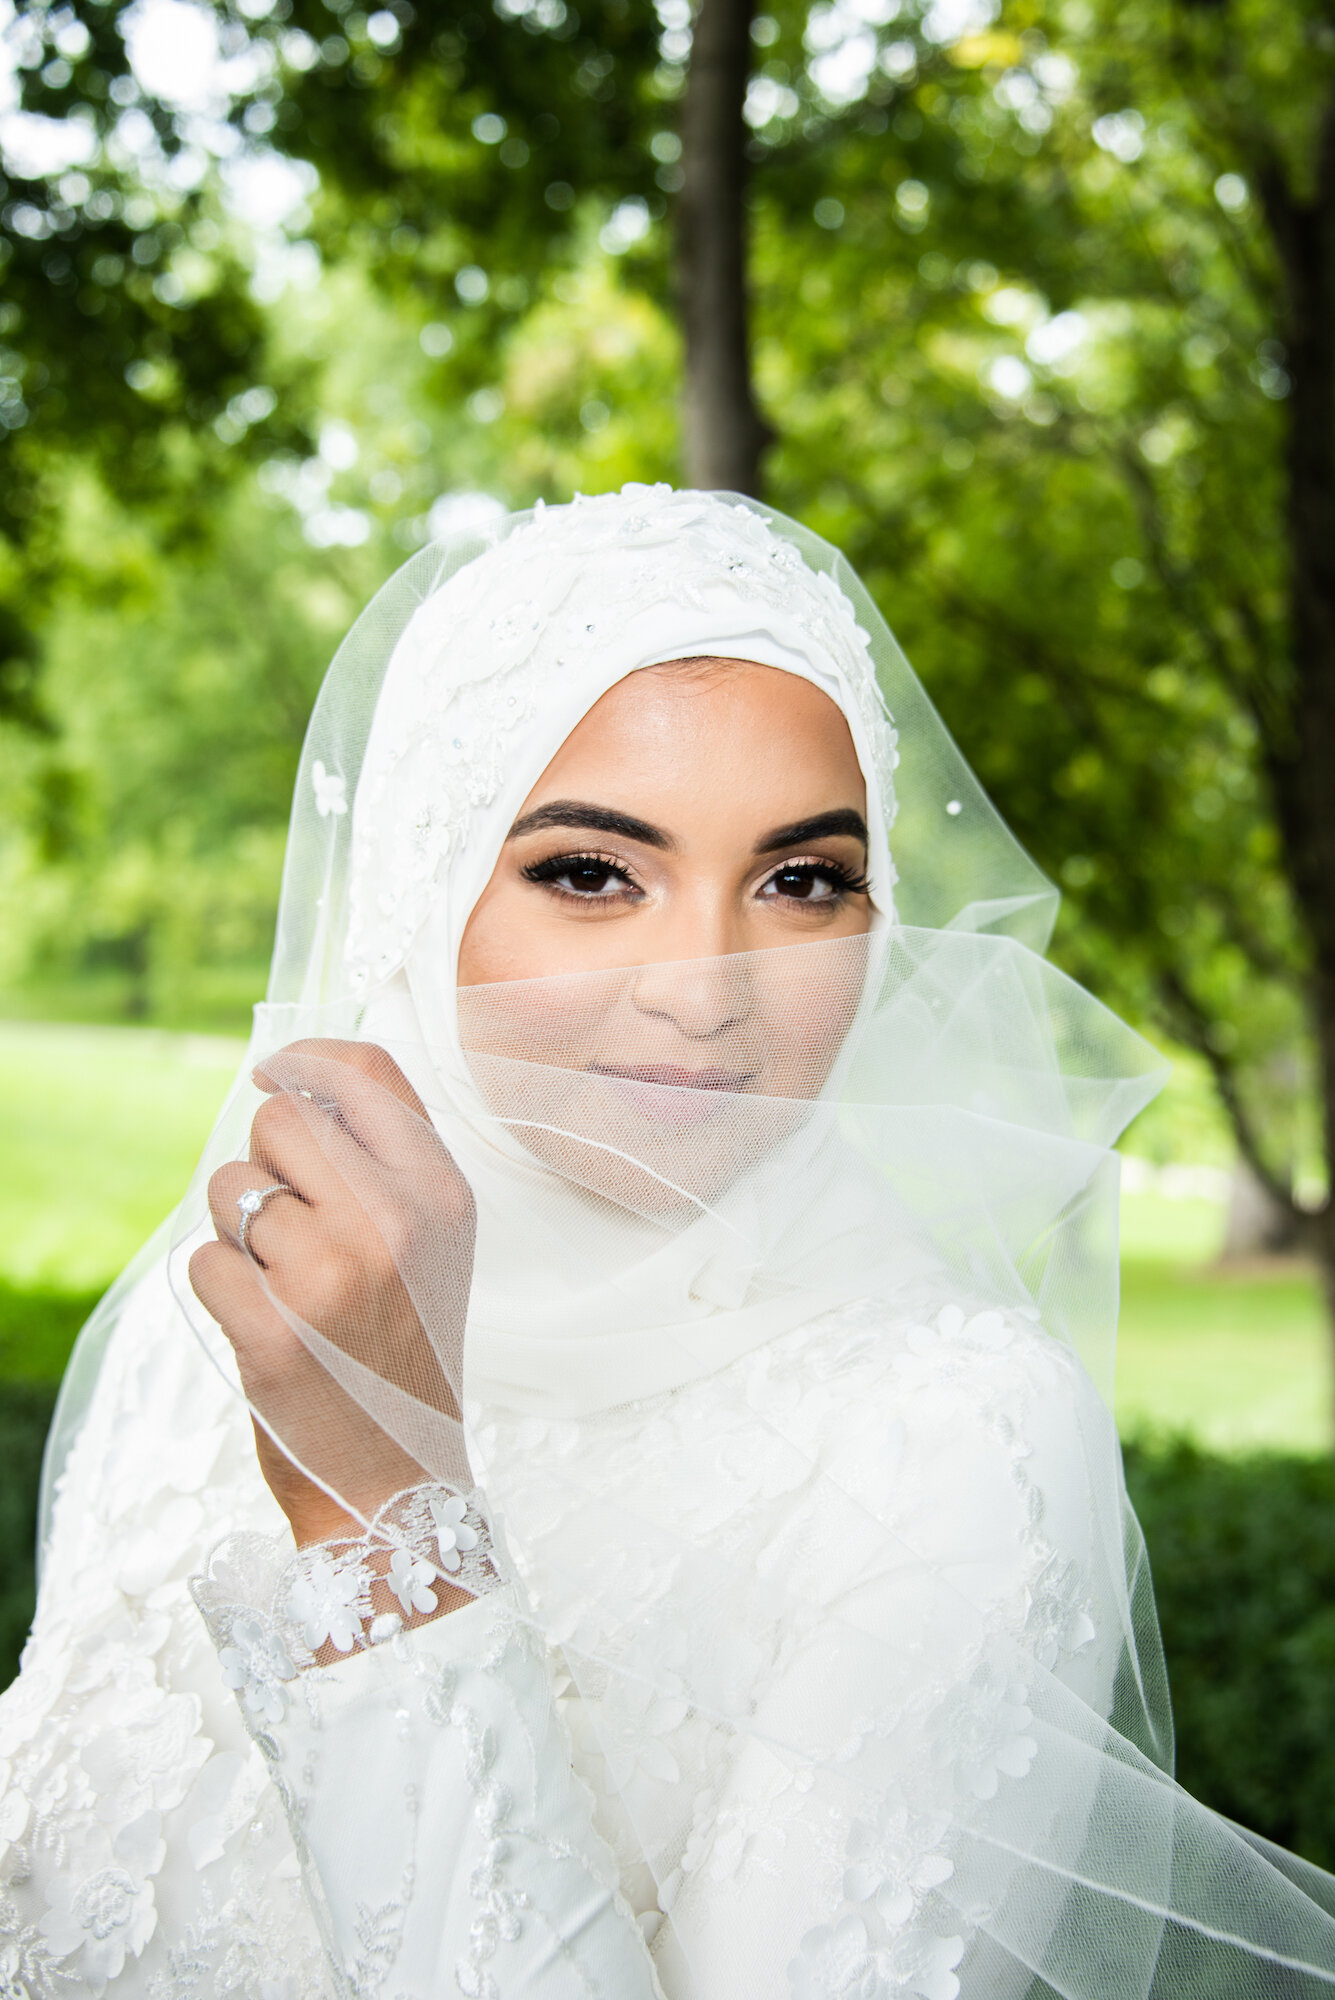 — Fourteenth: The Wedding Hijab